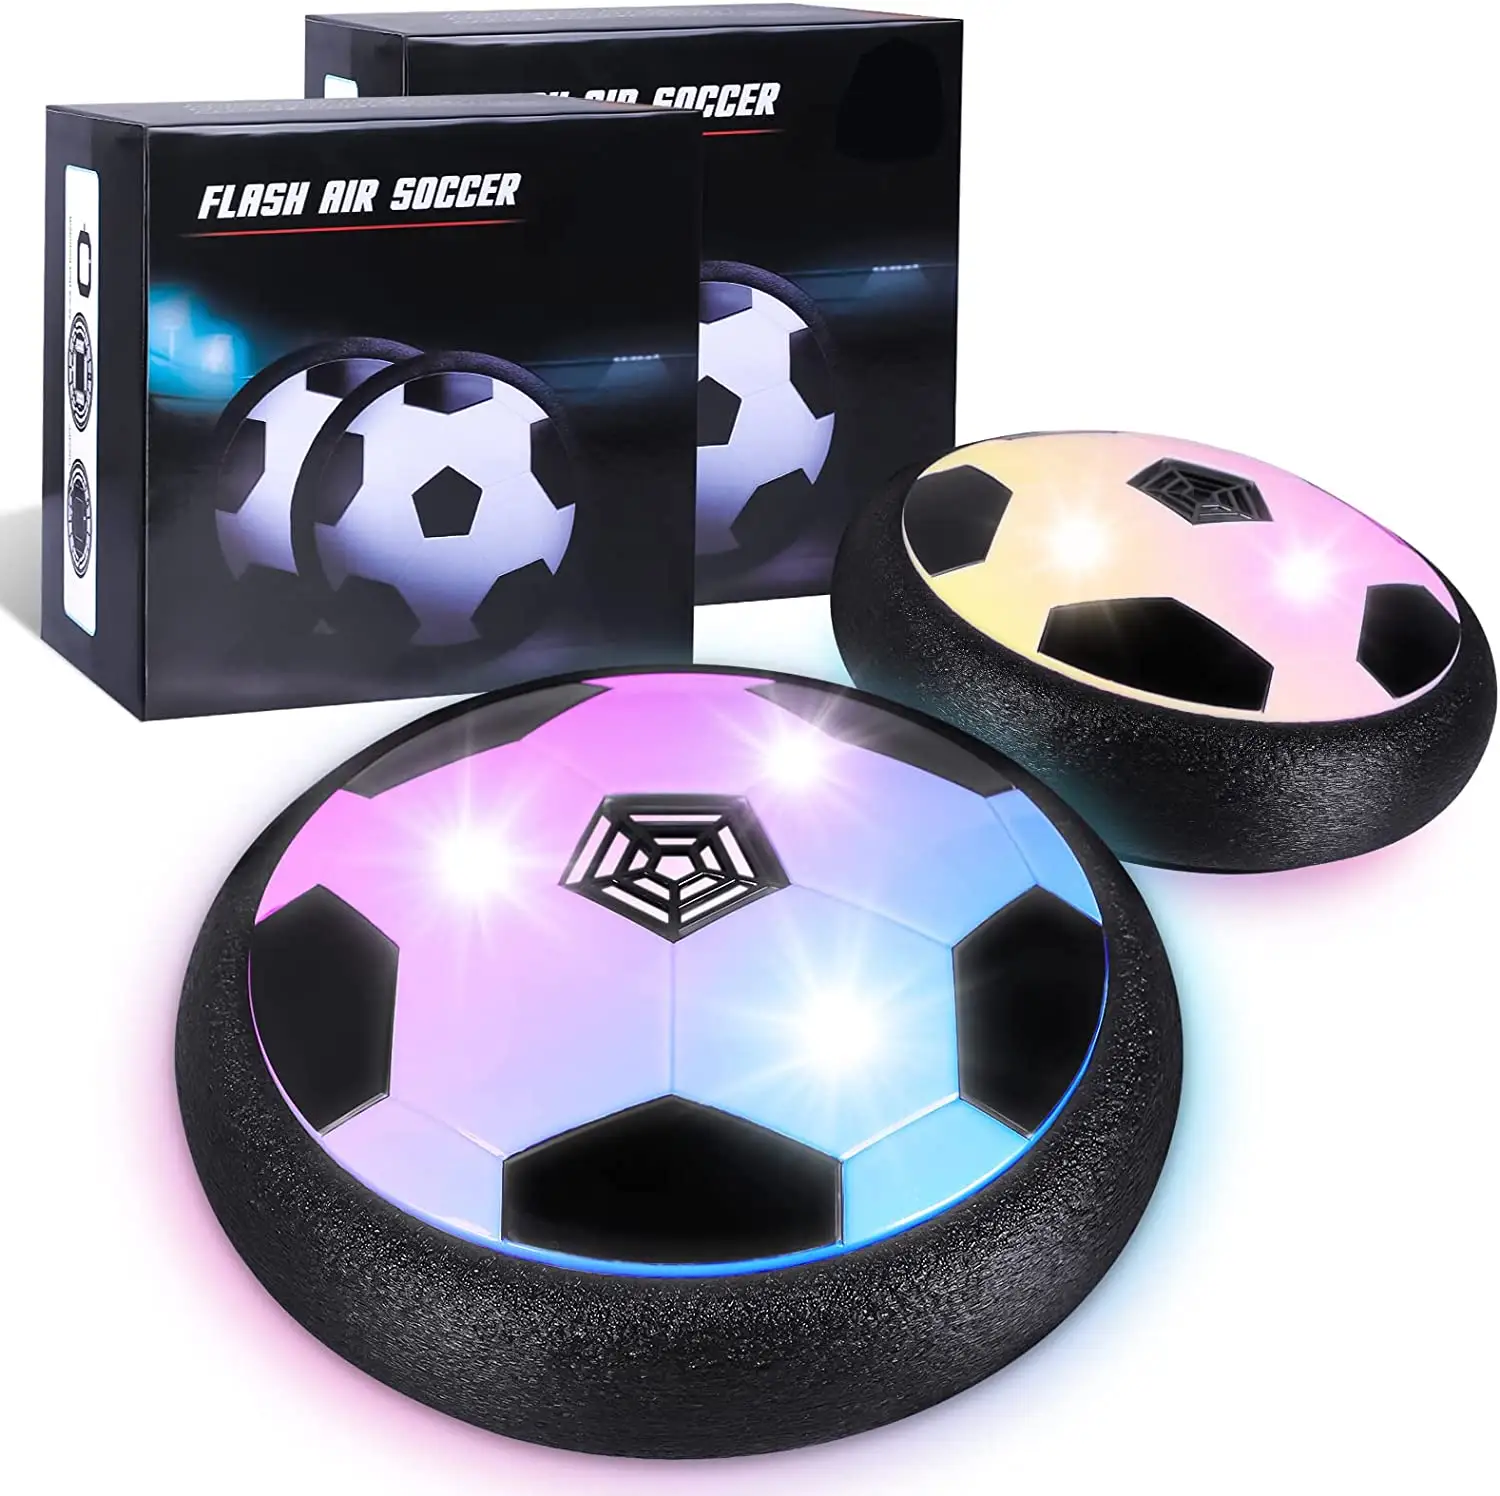 СВЕТОДИОДНЫЙ футбольный мяч DWI, тренировочный мяч с воздушной силой, плавающий футбольный мяч для помещений со светодиодной подсветкой и улучшенной пеной